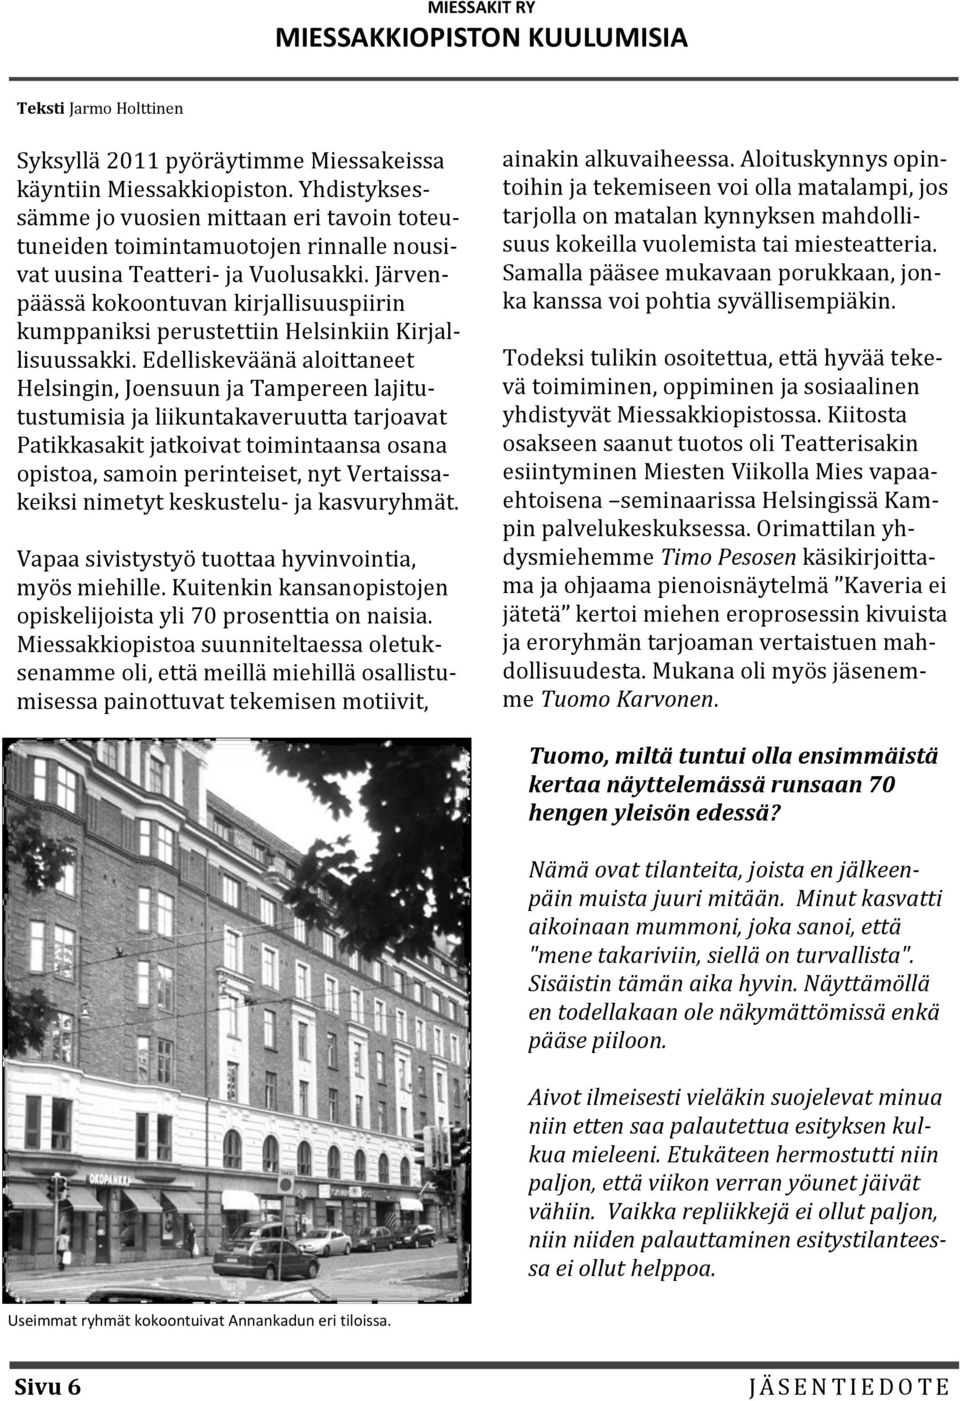 Järvenpäässä kokoontuvan kirjallisuuspiirin kumppaniksi perustettiin Helsinkiin Kirjallisuussakki.